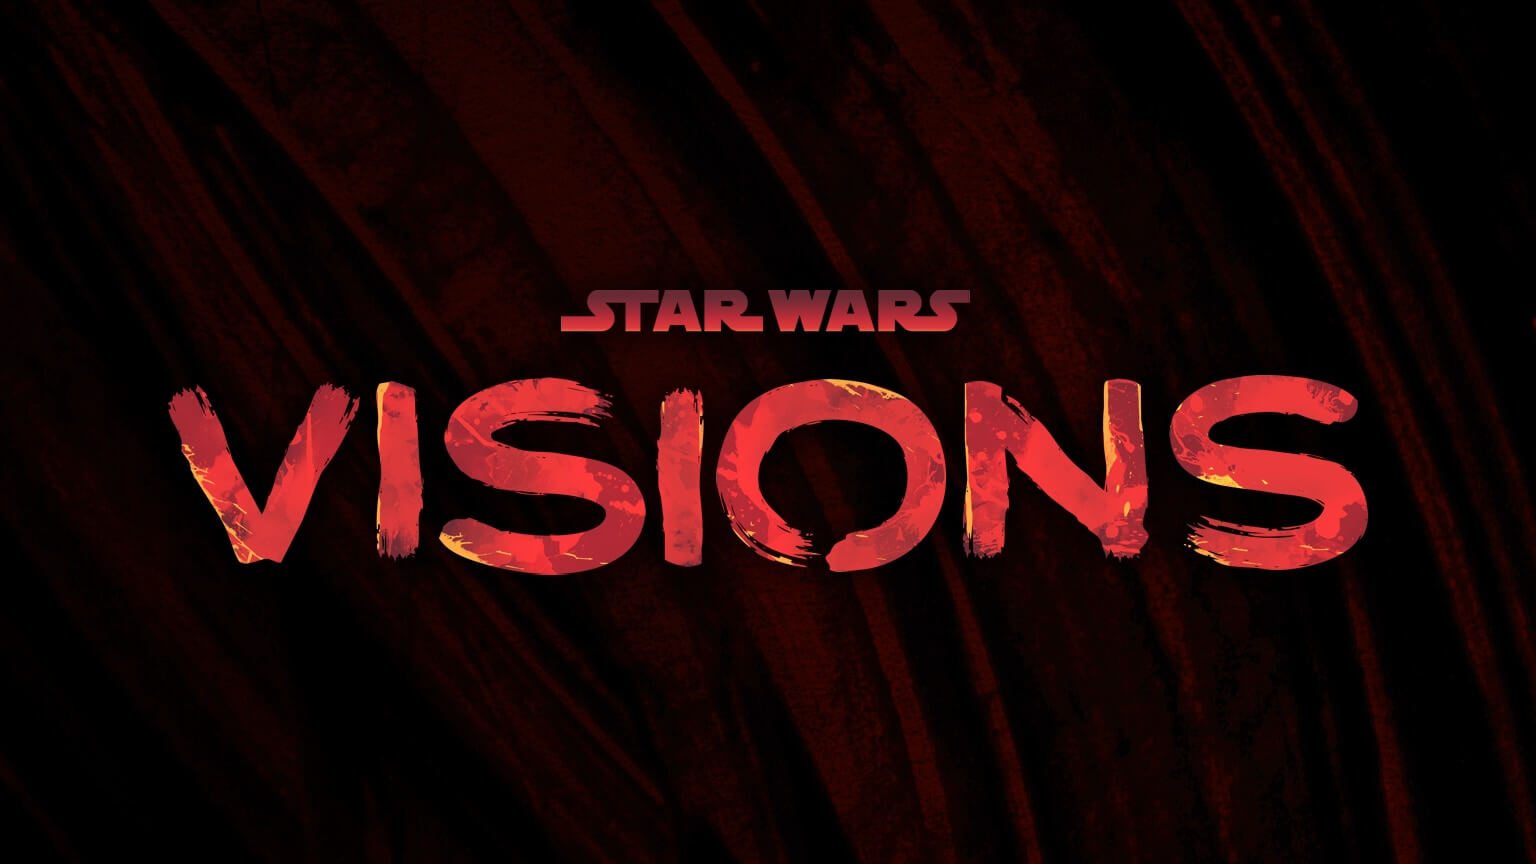 Star Wars Visions Volume 2: novo trailer dublado é lançado